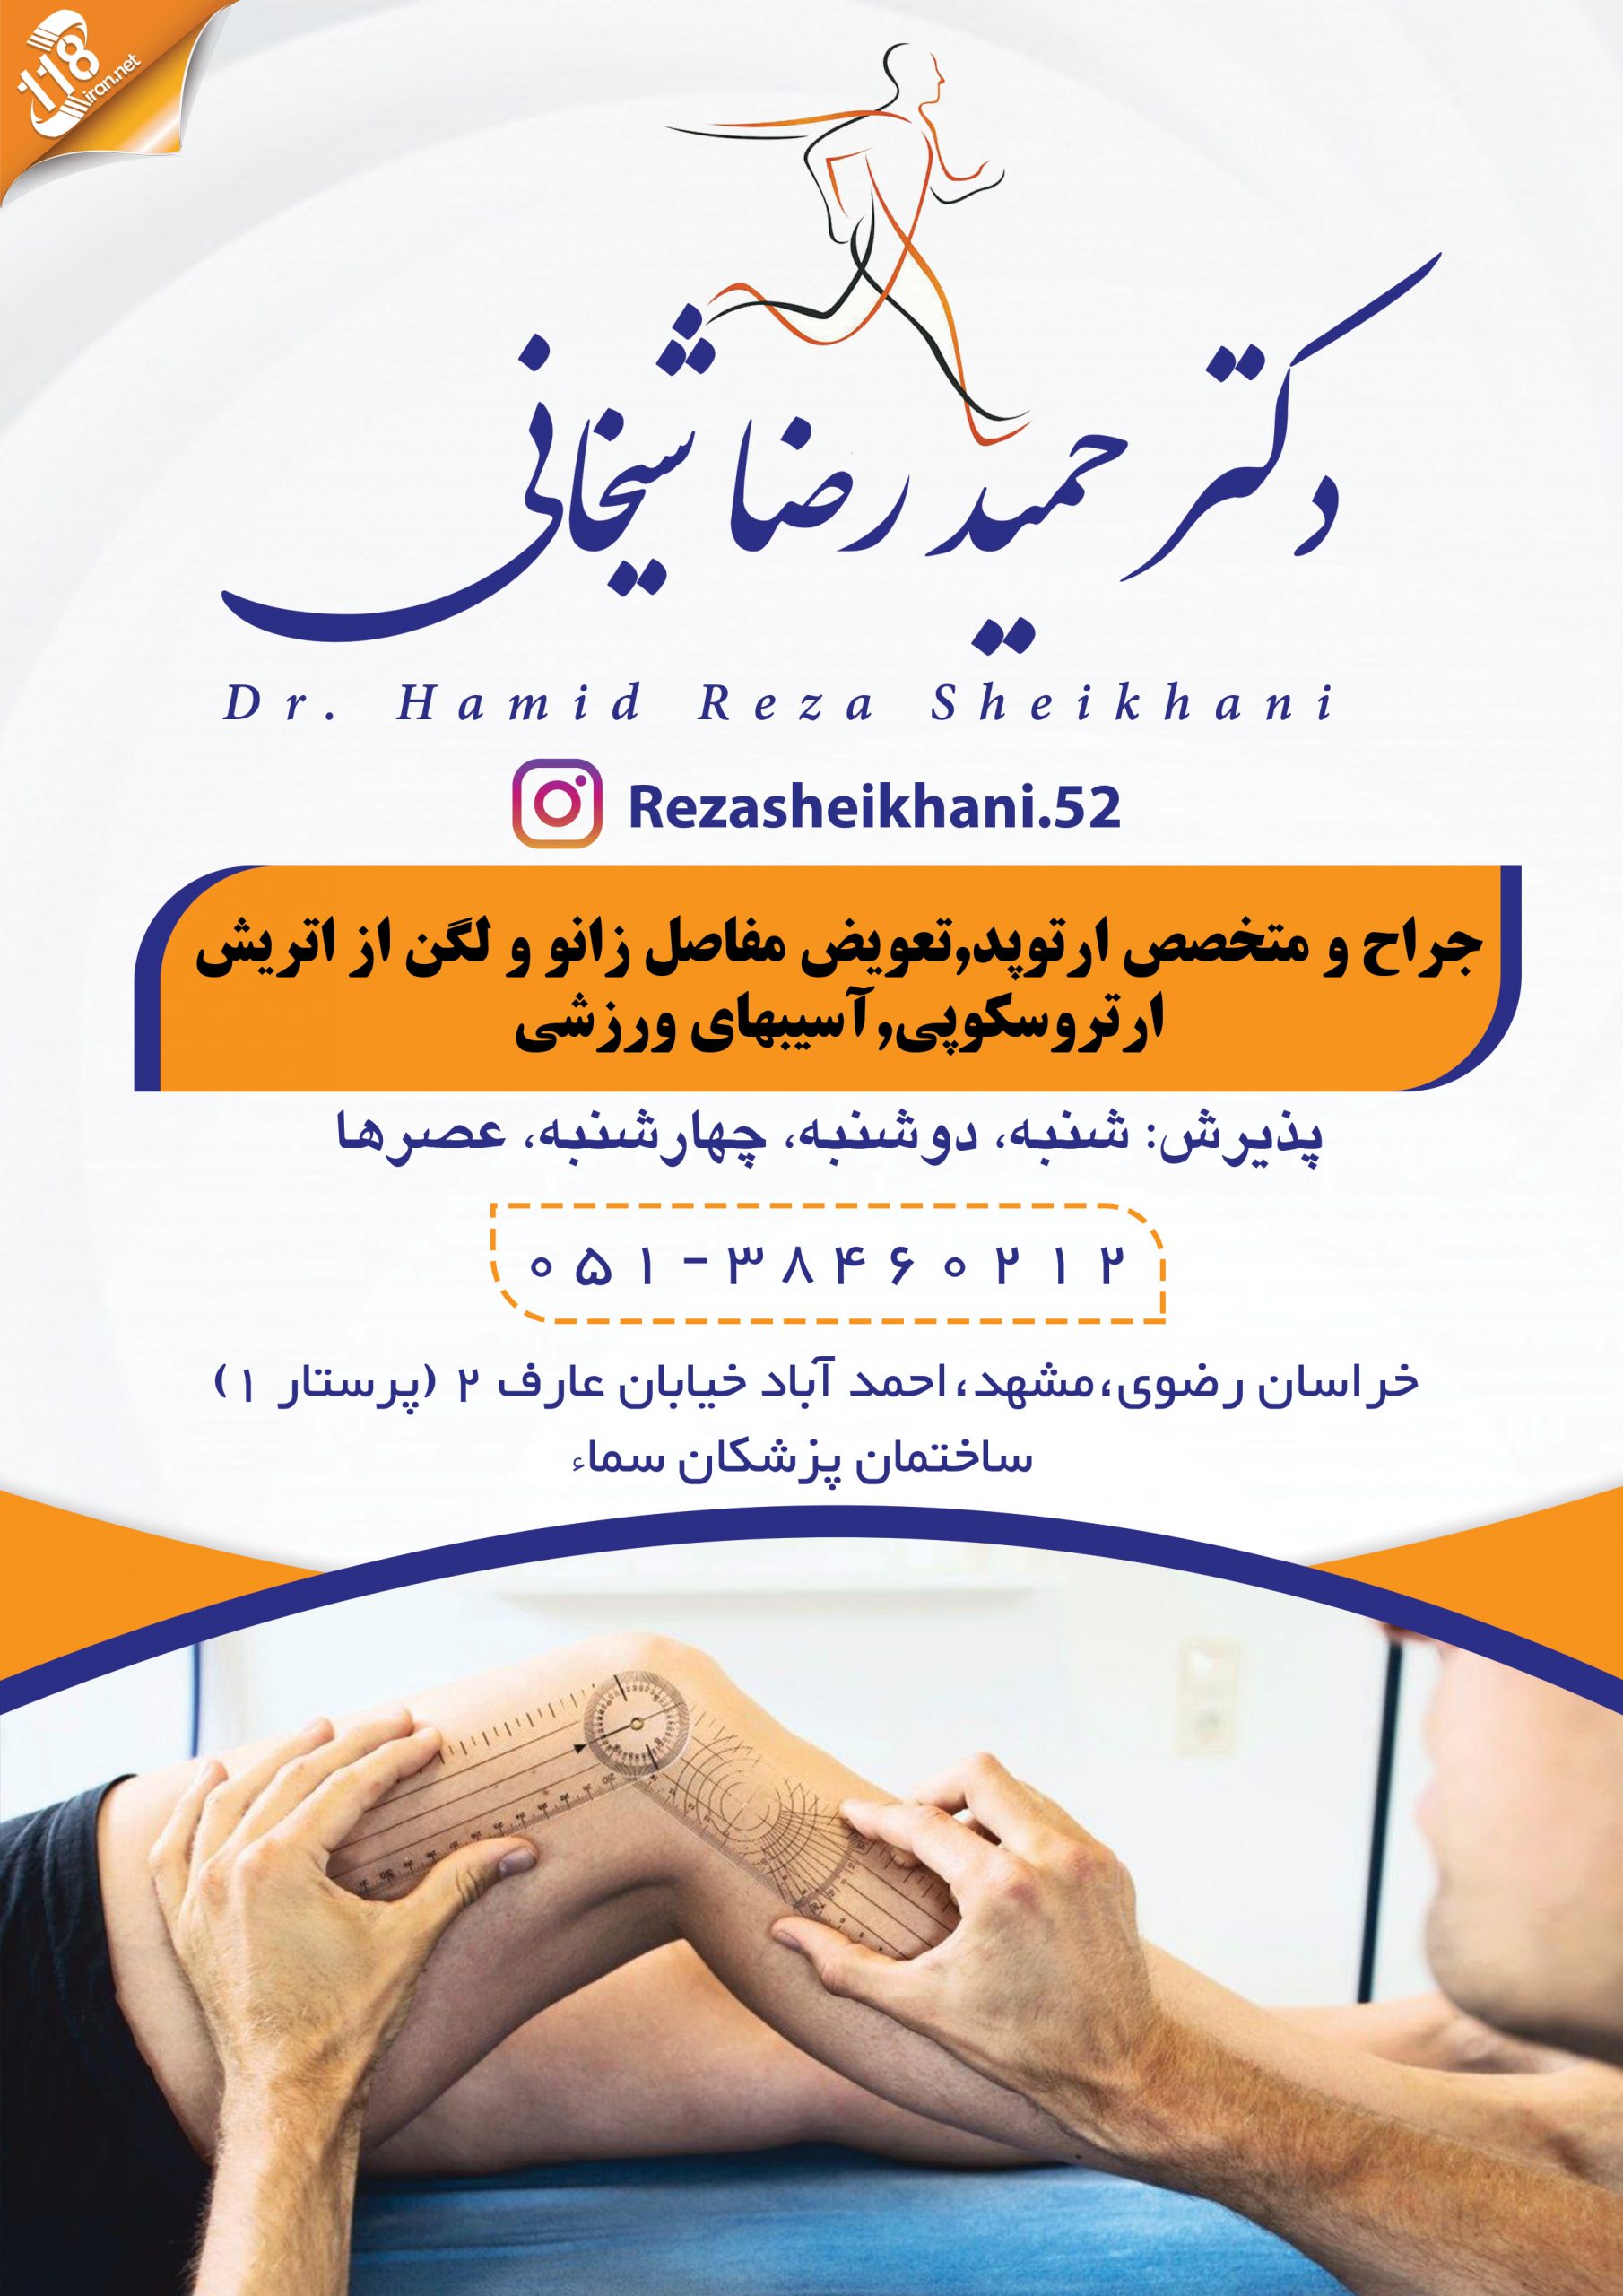  دکتر حمید رضا شیخانی در مشهد 